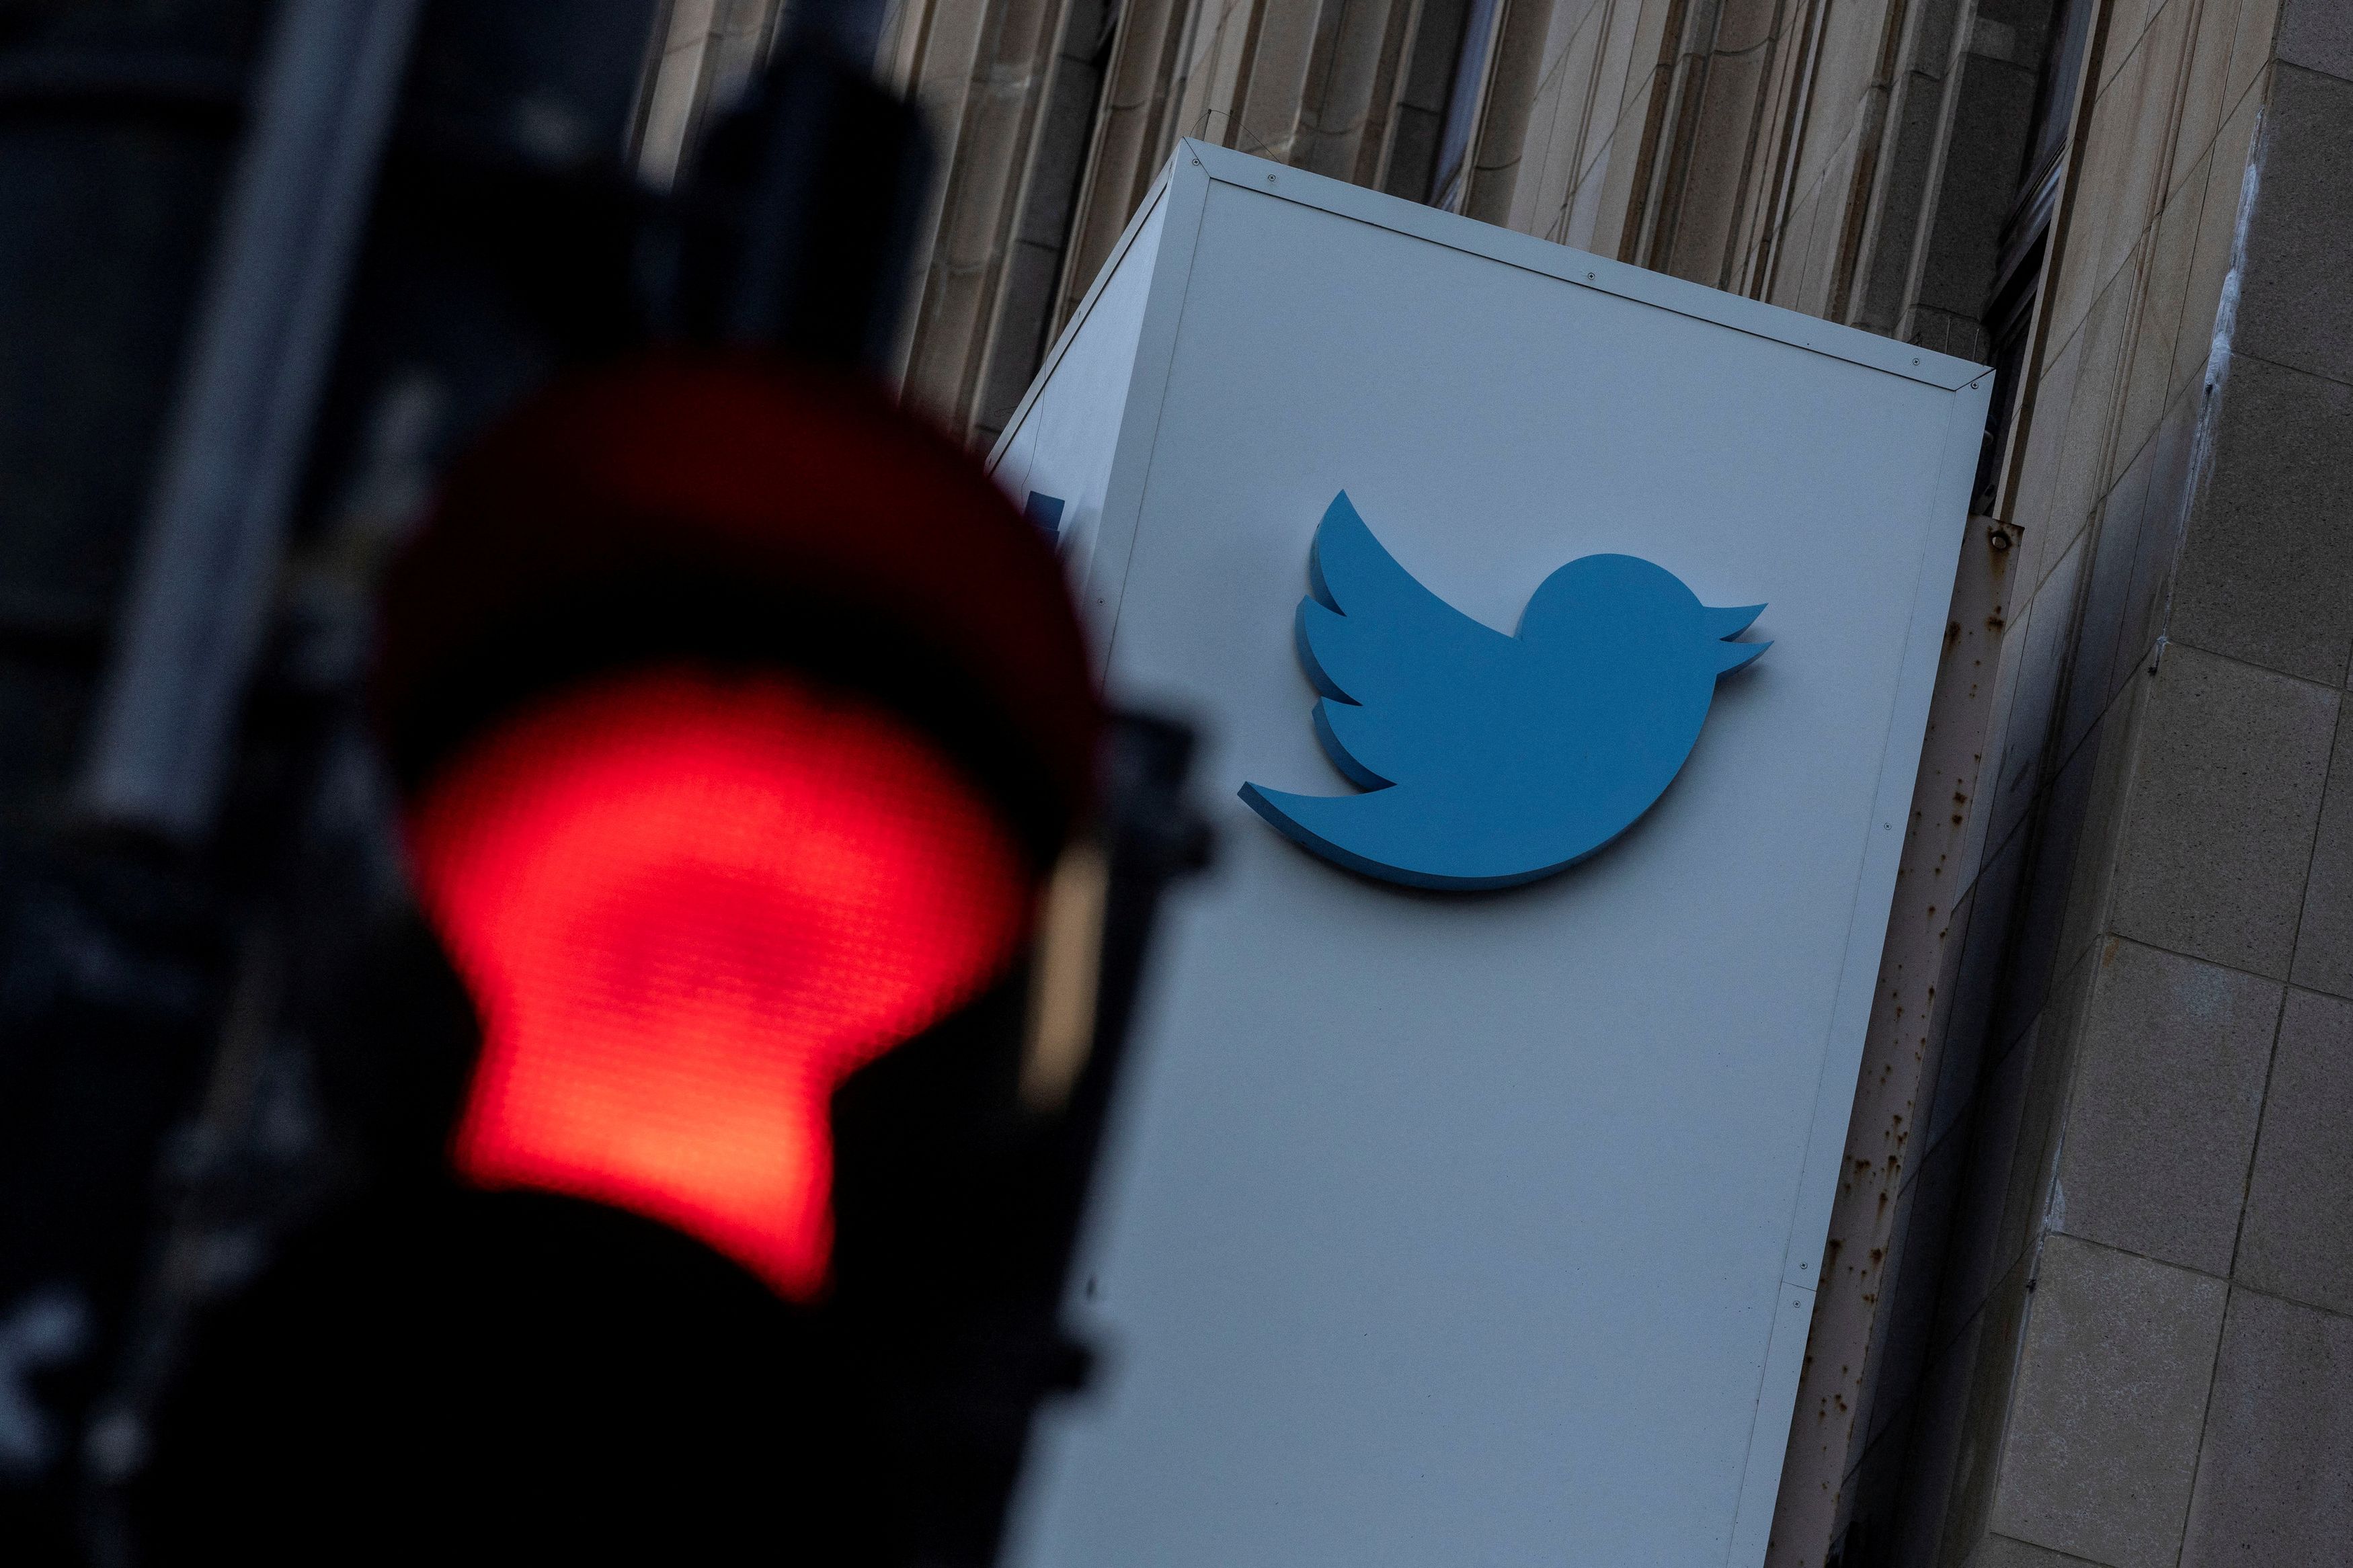 Twitter: Χιλιάδες αναφορές για προβλήματα σύνδεσης